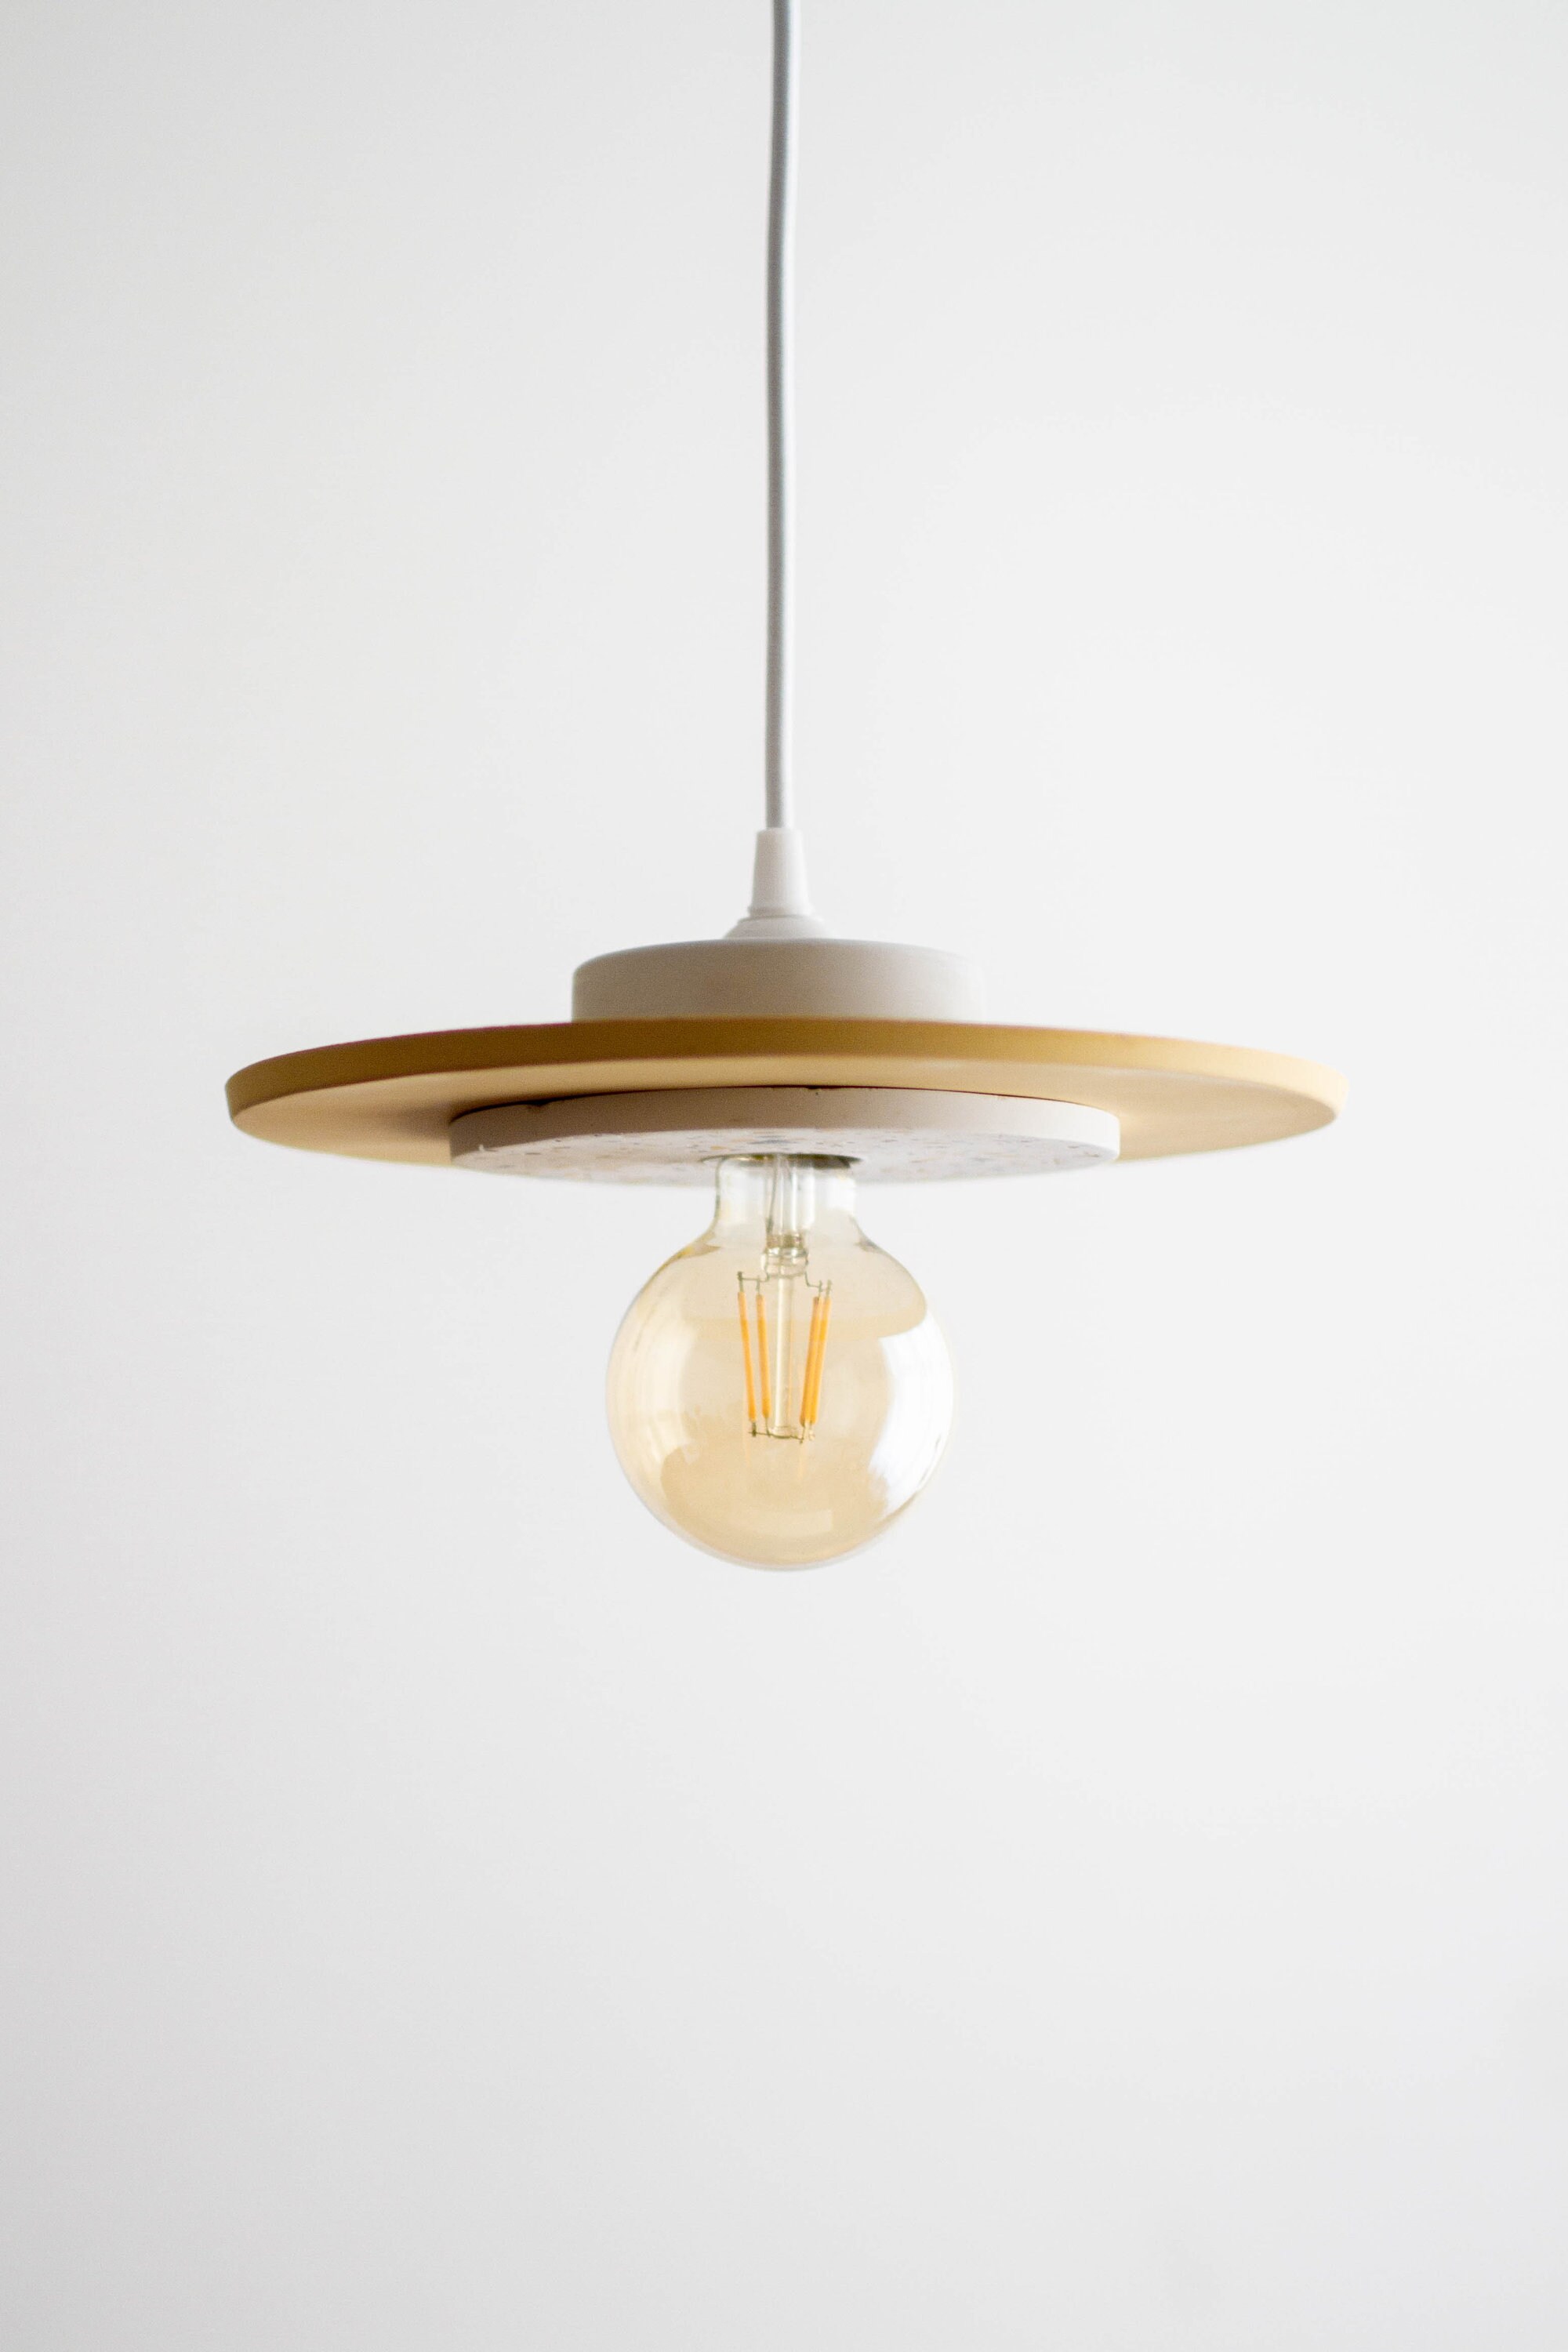 Lampe - Plafonnier Jesmonite/Terazzo Lampe Design